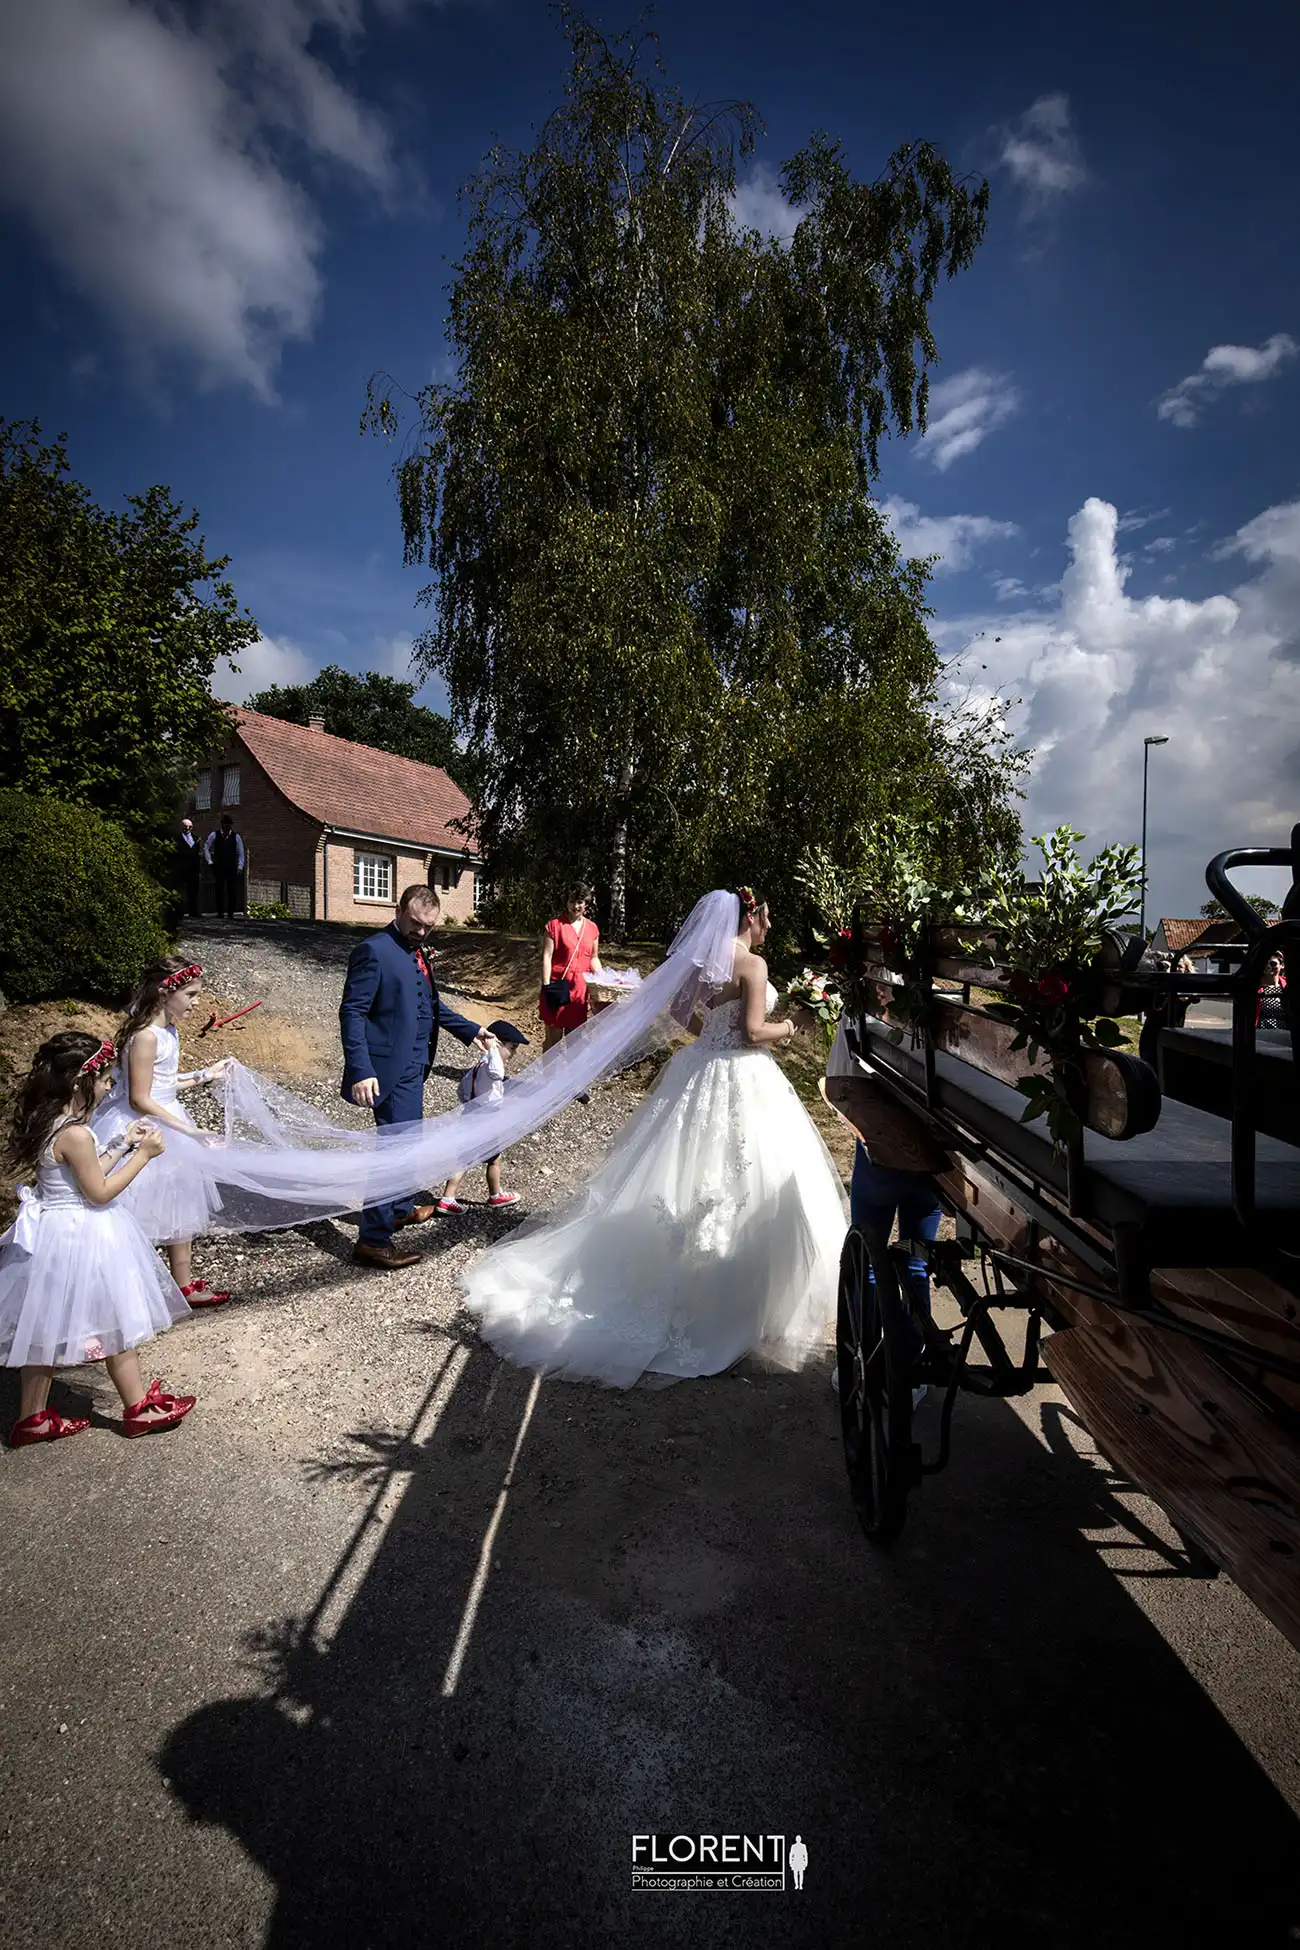 photographe mariage lille etaples les maries joyeux montent dans le carrosse direction la mairie florent studio boulogne sur mer le touquet paris saint omer